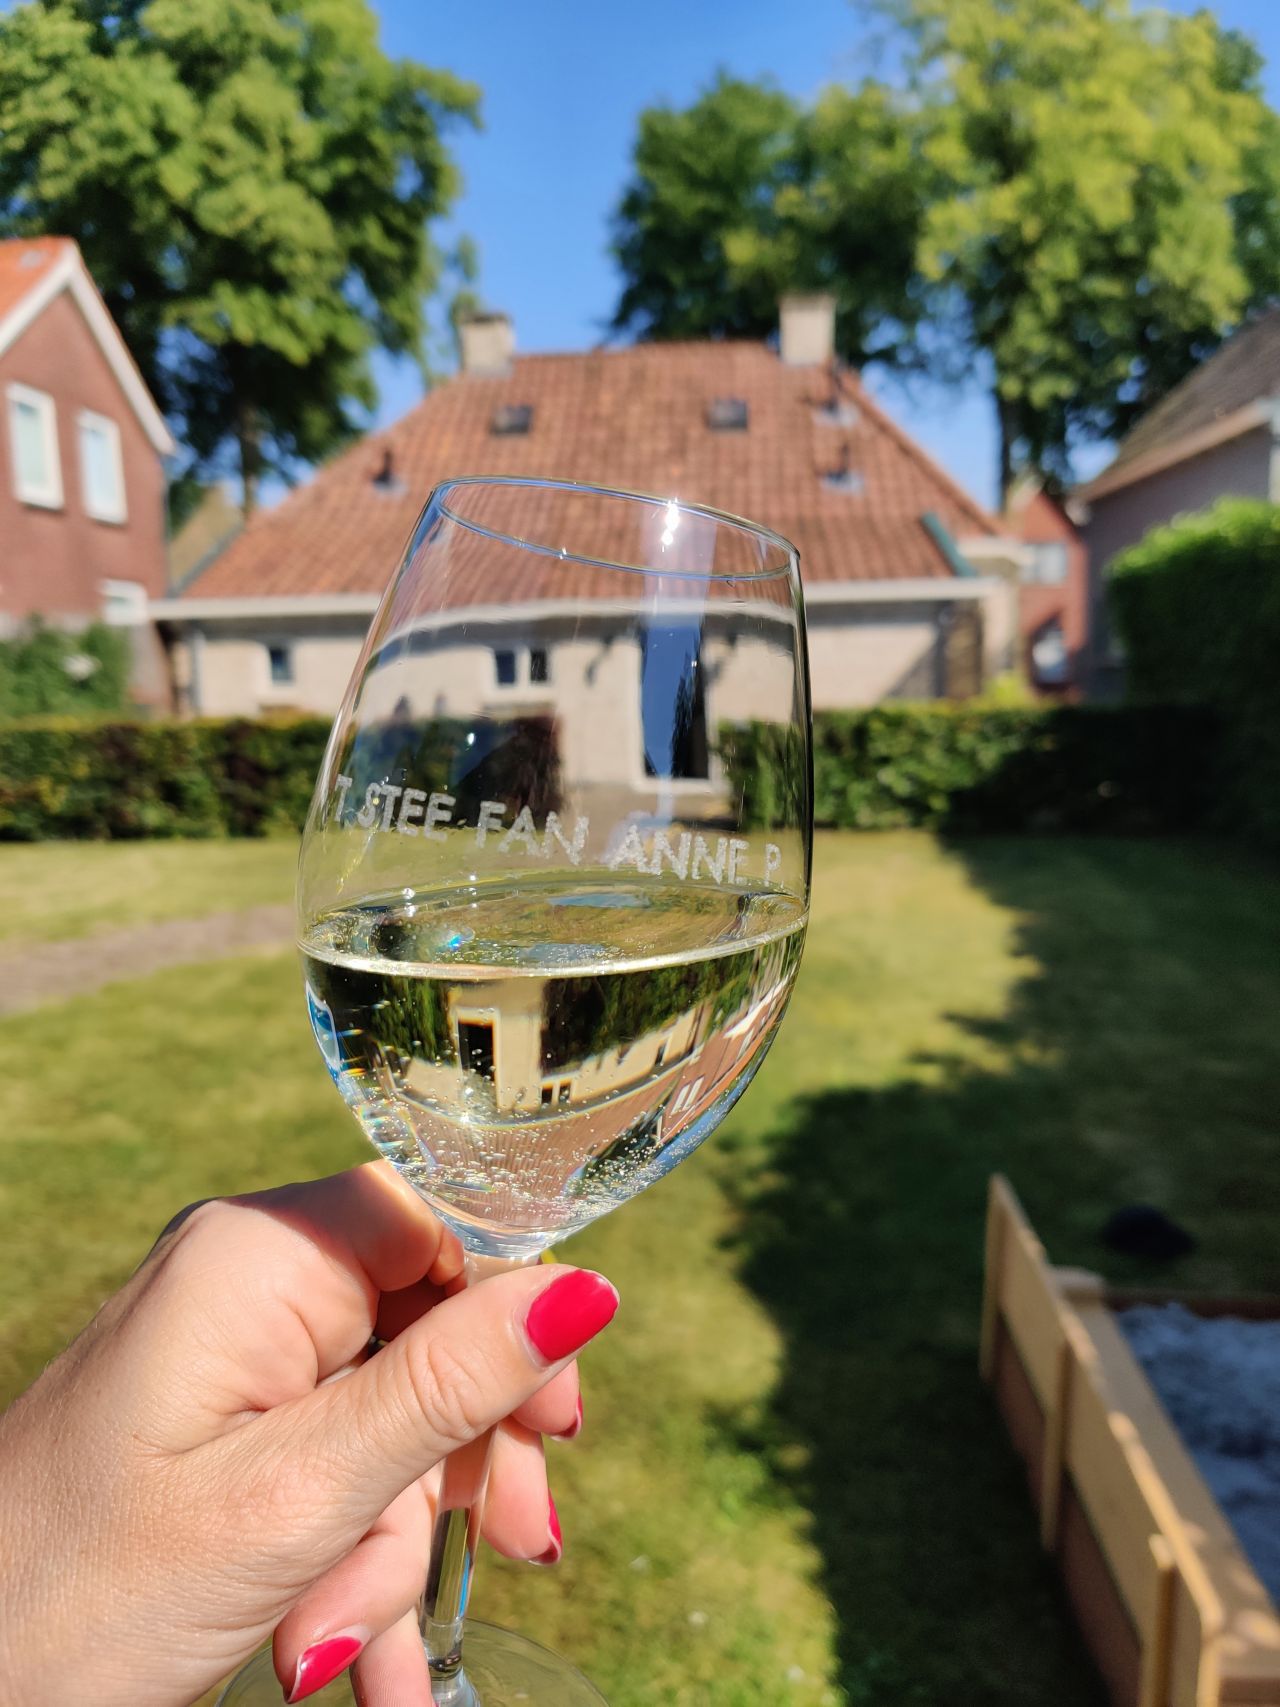 Zuidoost Friesland vakantiehuisje t Stee fan Anne P10